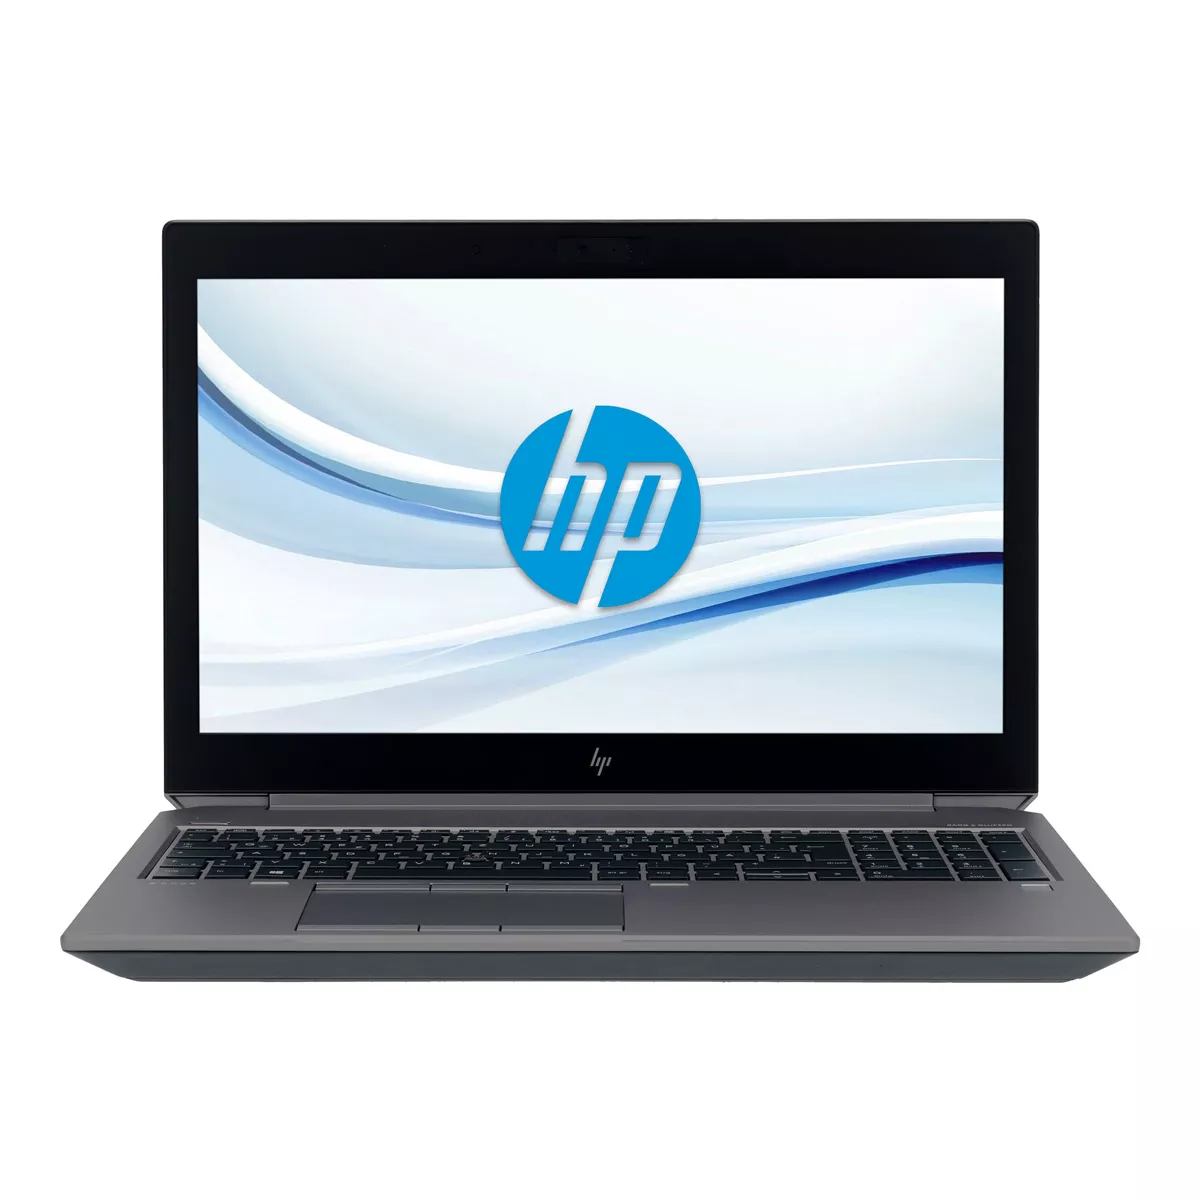 HP ZBook 15 G5 Core i7 8750H nVidia Quadro P1000M 512 GB M.2 nVME SSD Webcam A